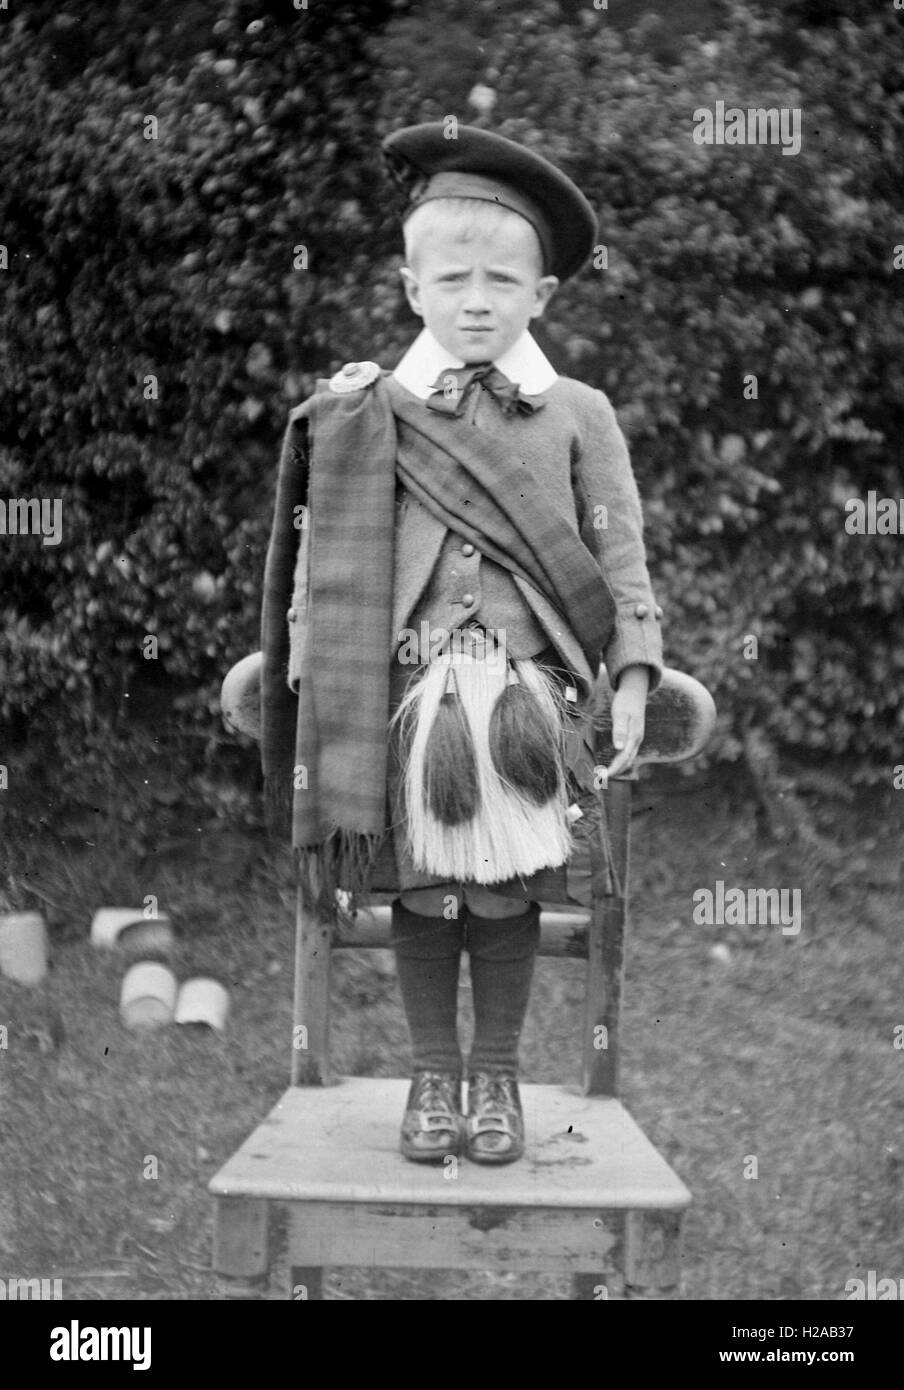 Garçon en costume traditionnel écossais. c1900. Photo par Tony Henshaw Banque D'Images